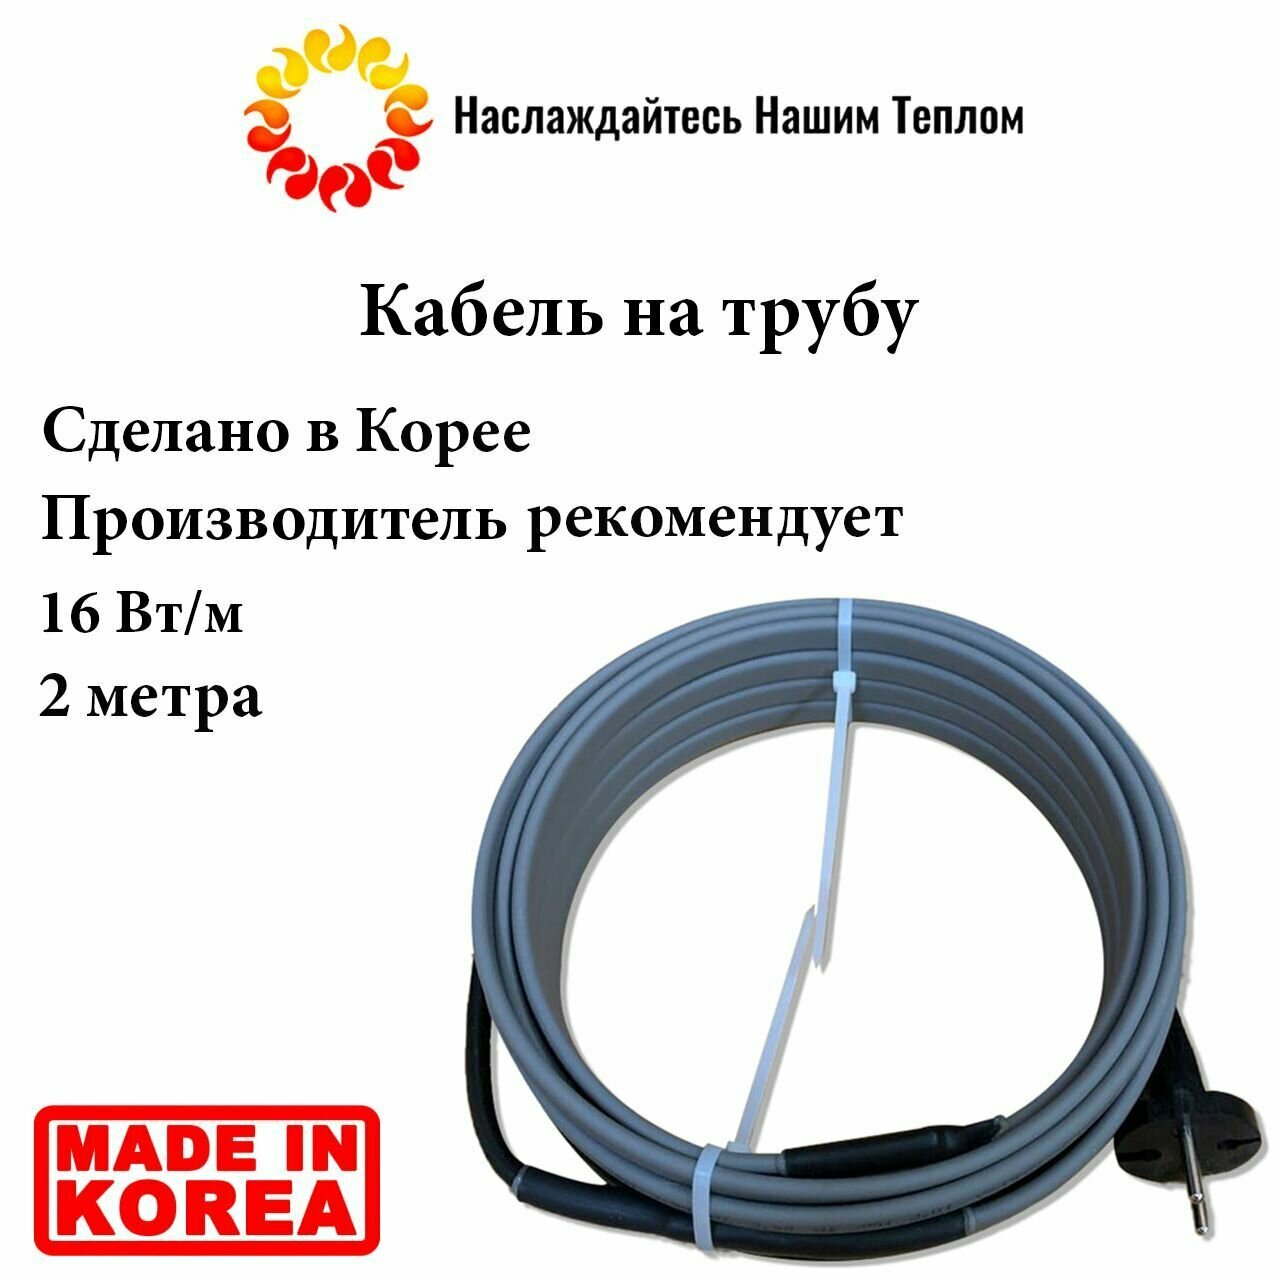 Саморегулирующийся наружный кабель на трубу 16 Вт/м, 2 метра, произведено в Южной Корее